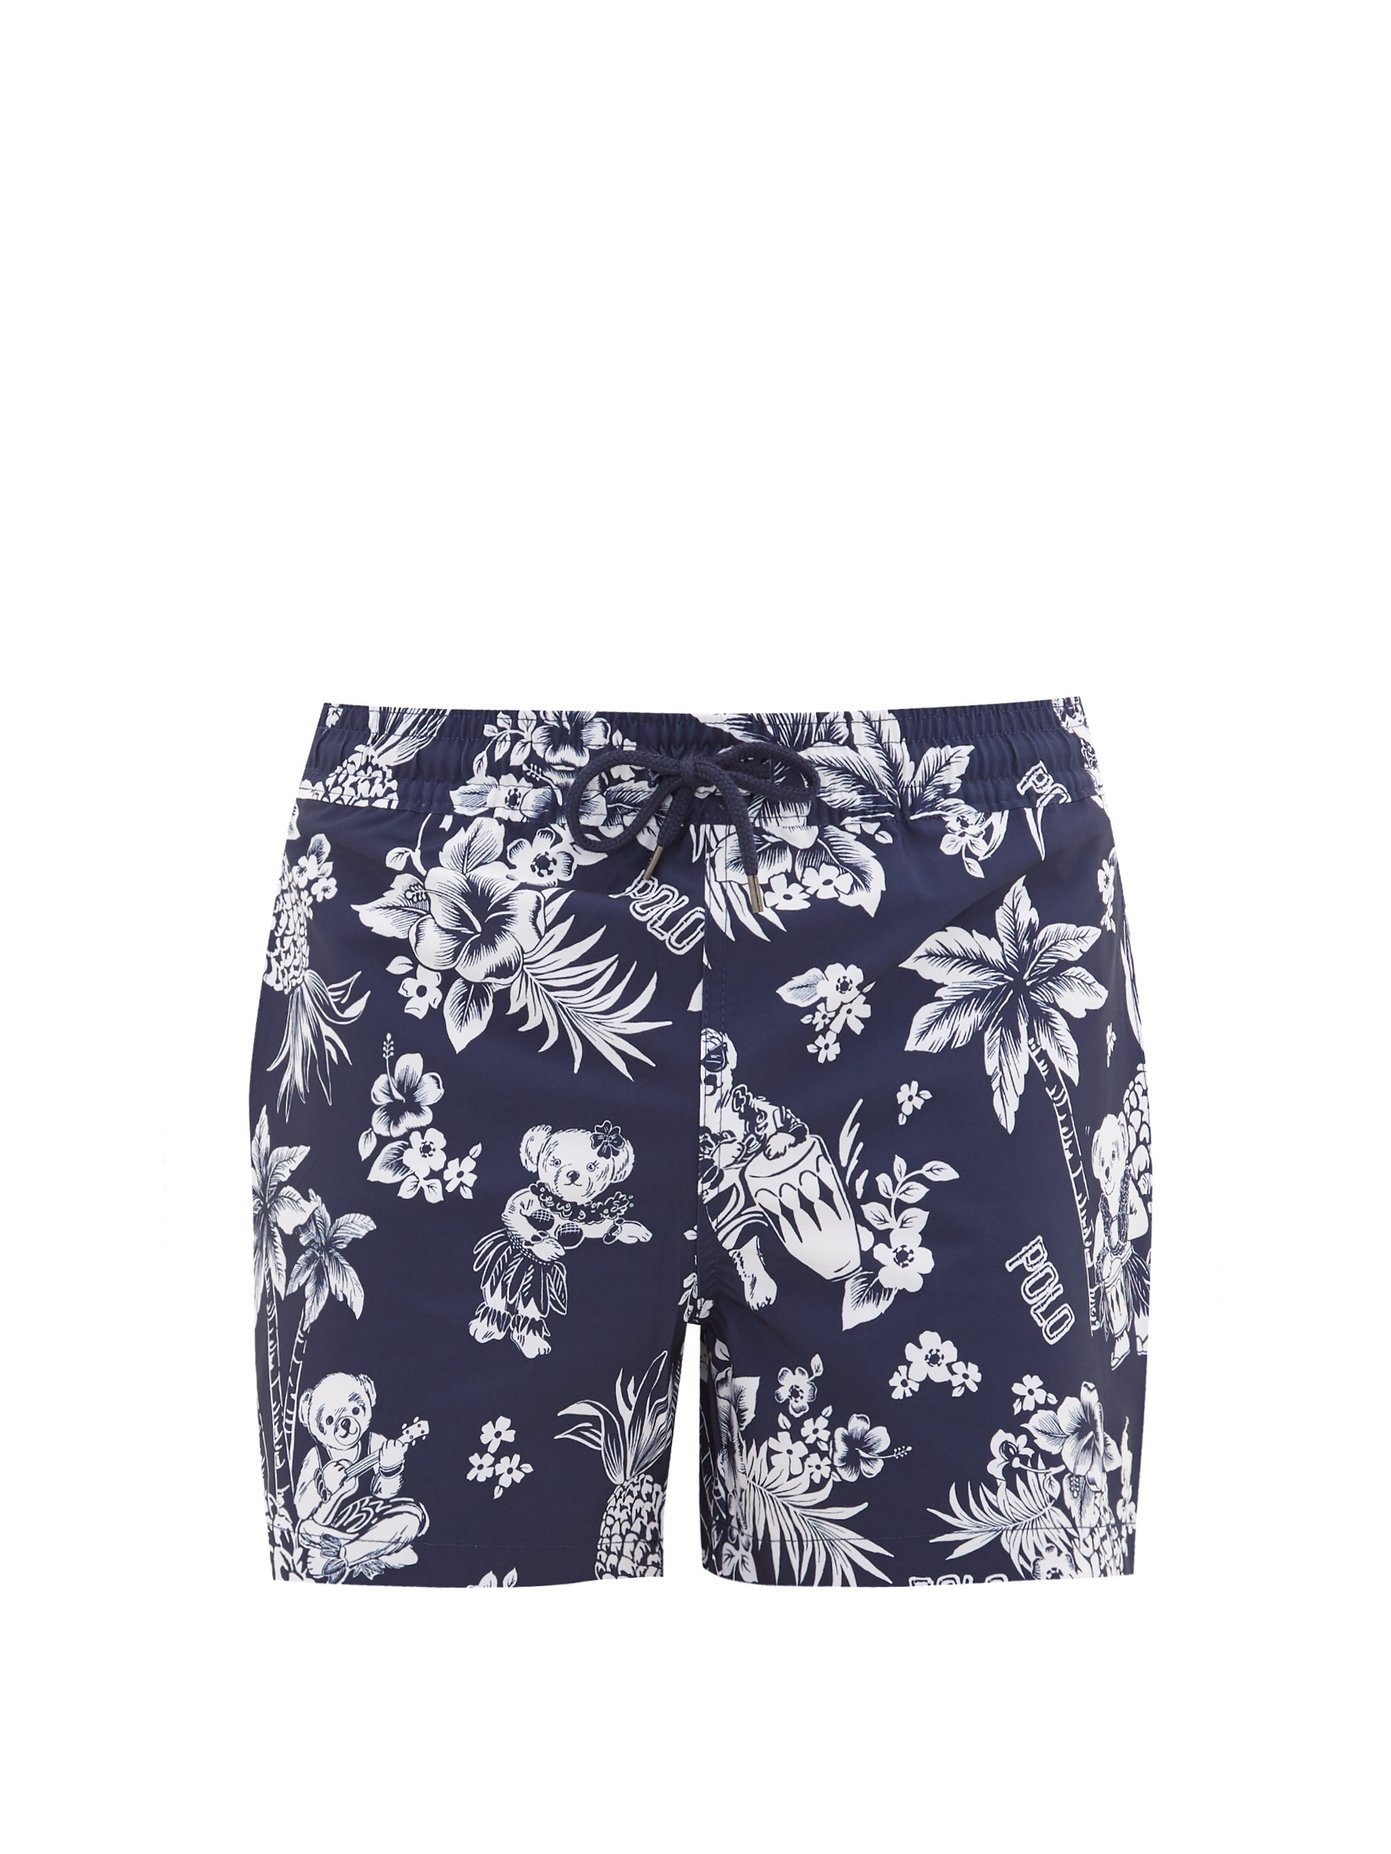 polo ralph lauren hawaiian swim shorts